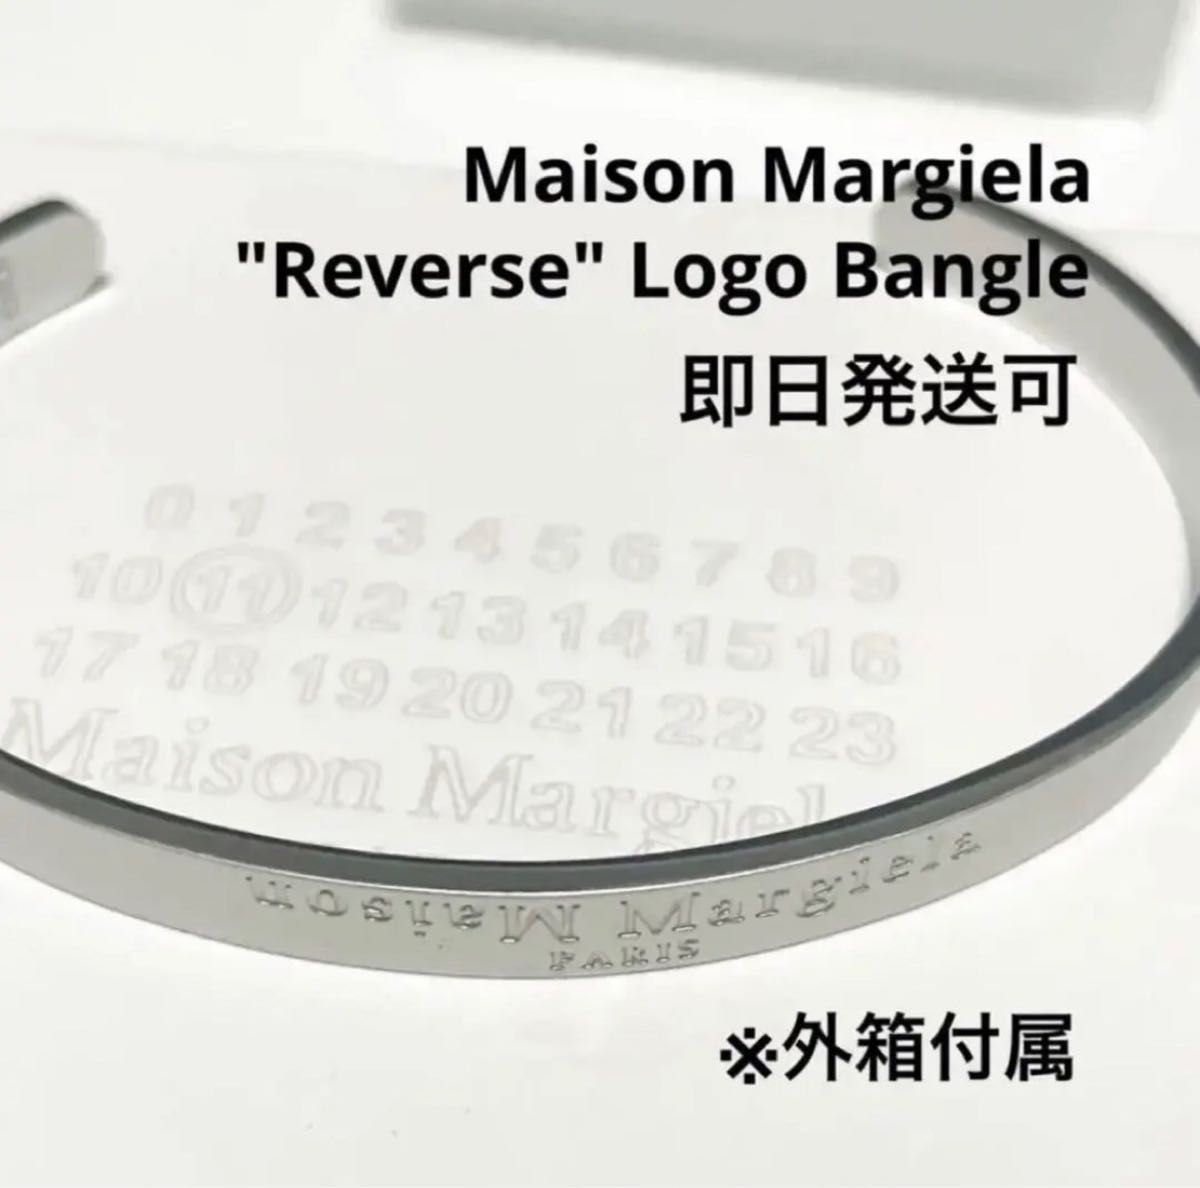 新品外箱あり】Maison Margiela メゾンマルジェラ 反転ロゴ バングル